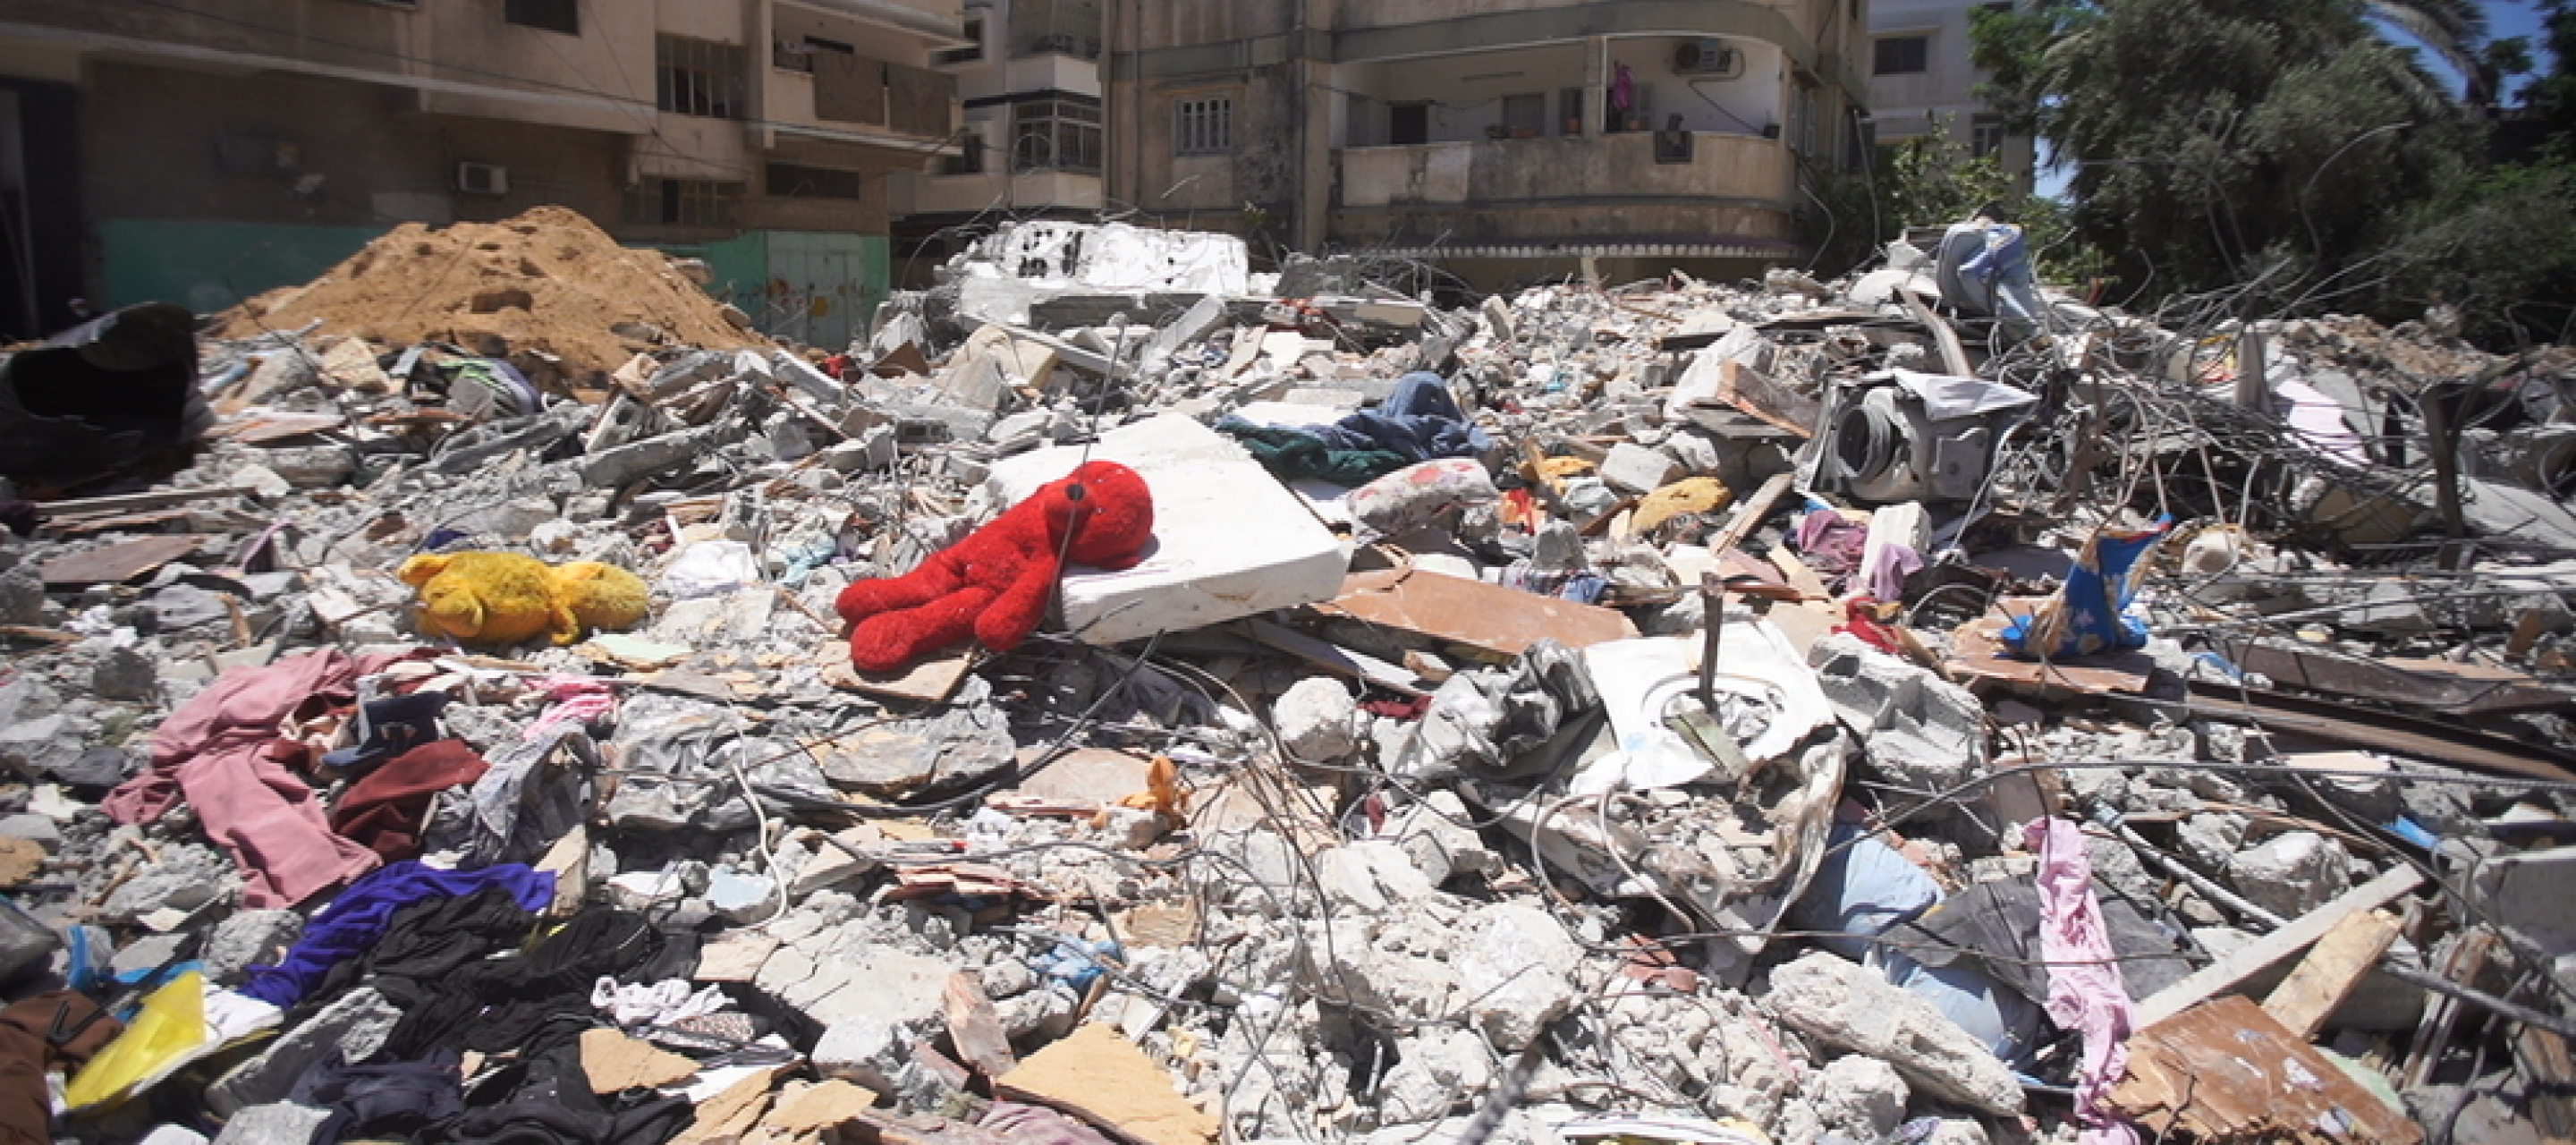 Ein Trümmerhaufen in der Stadt Gaza nach einem israelischen Luftangriffen.